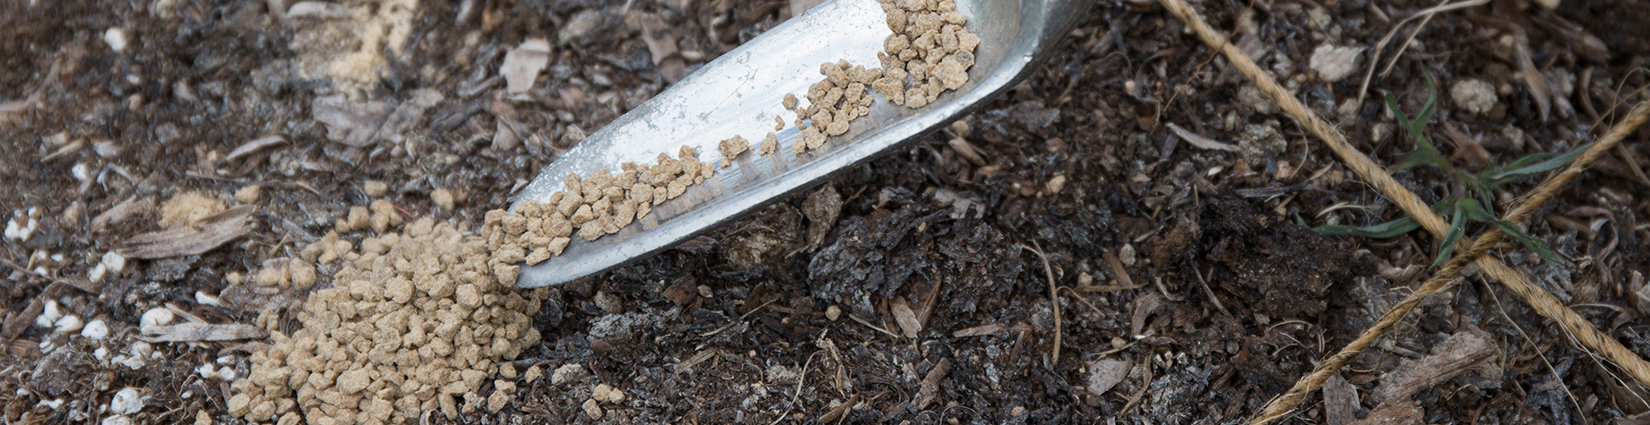 trowel dropping fertilizer pellets